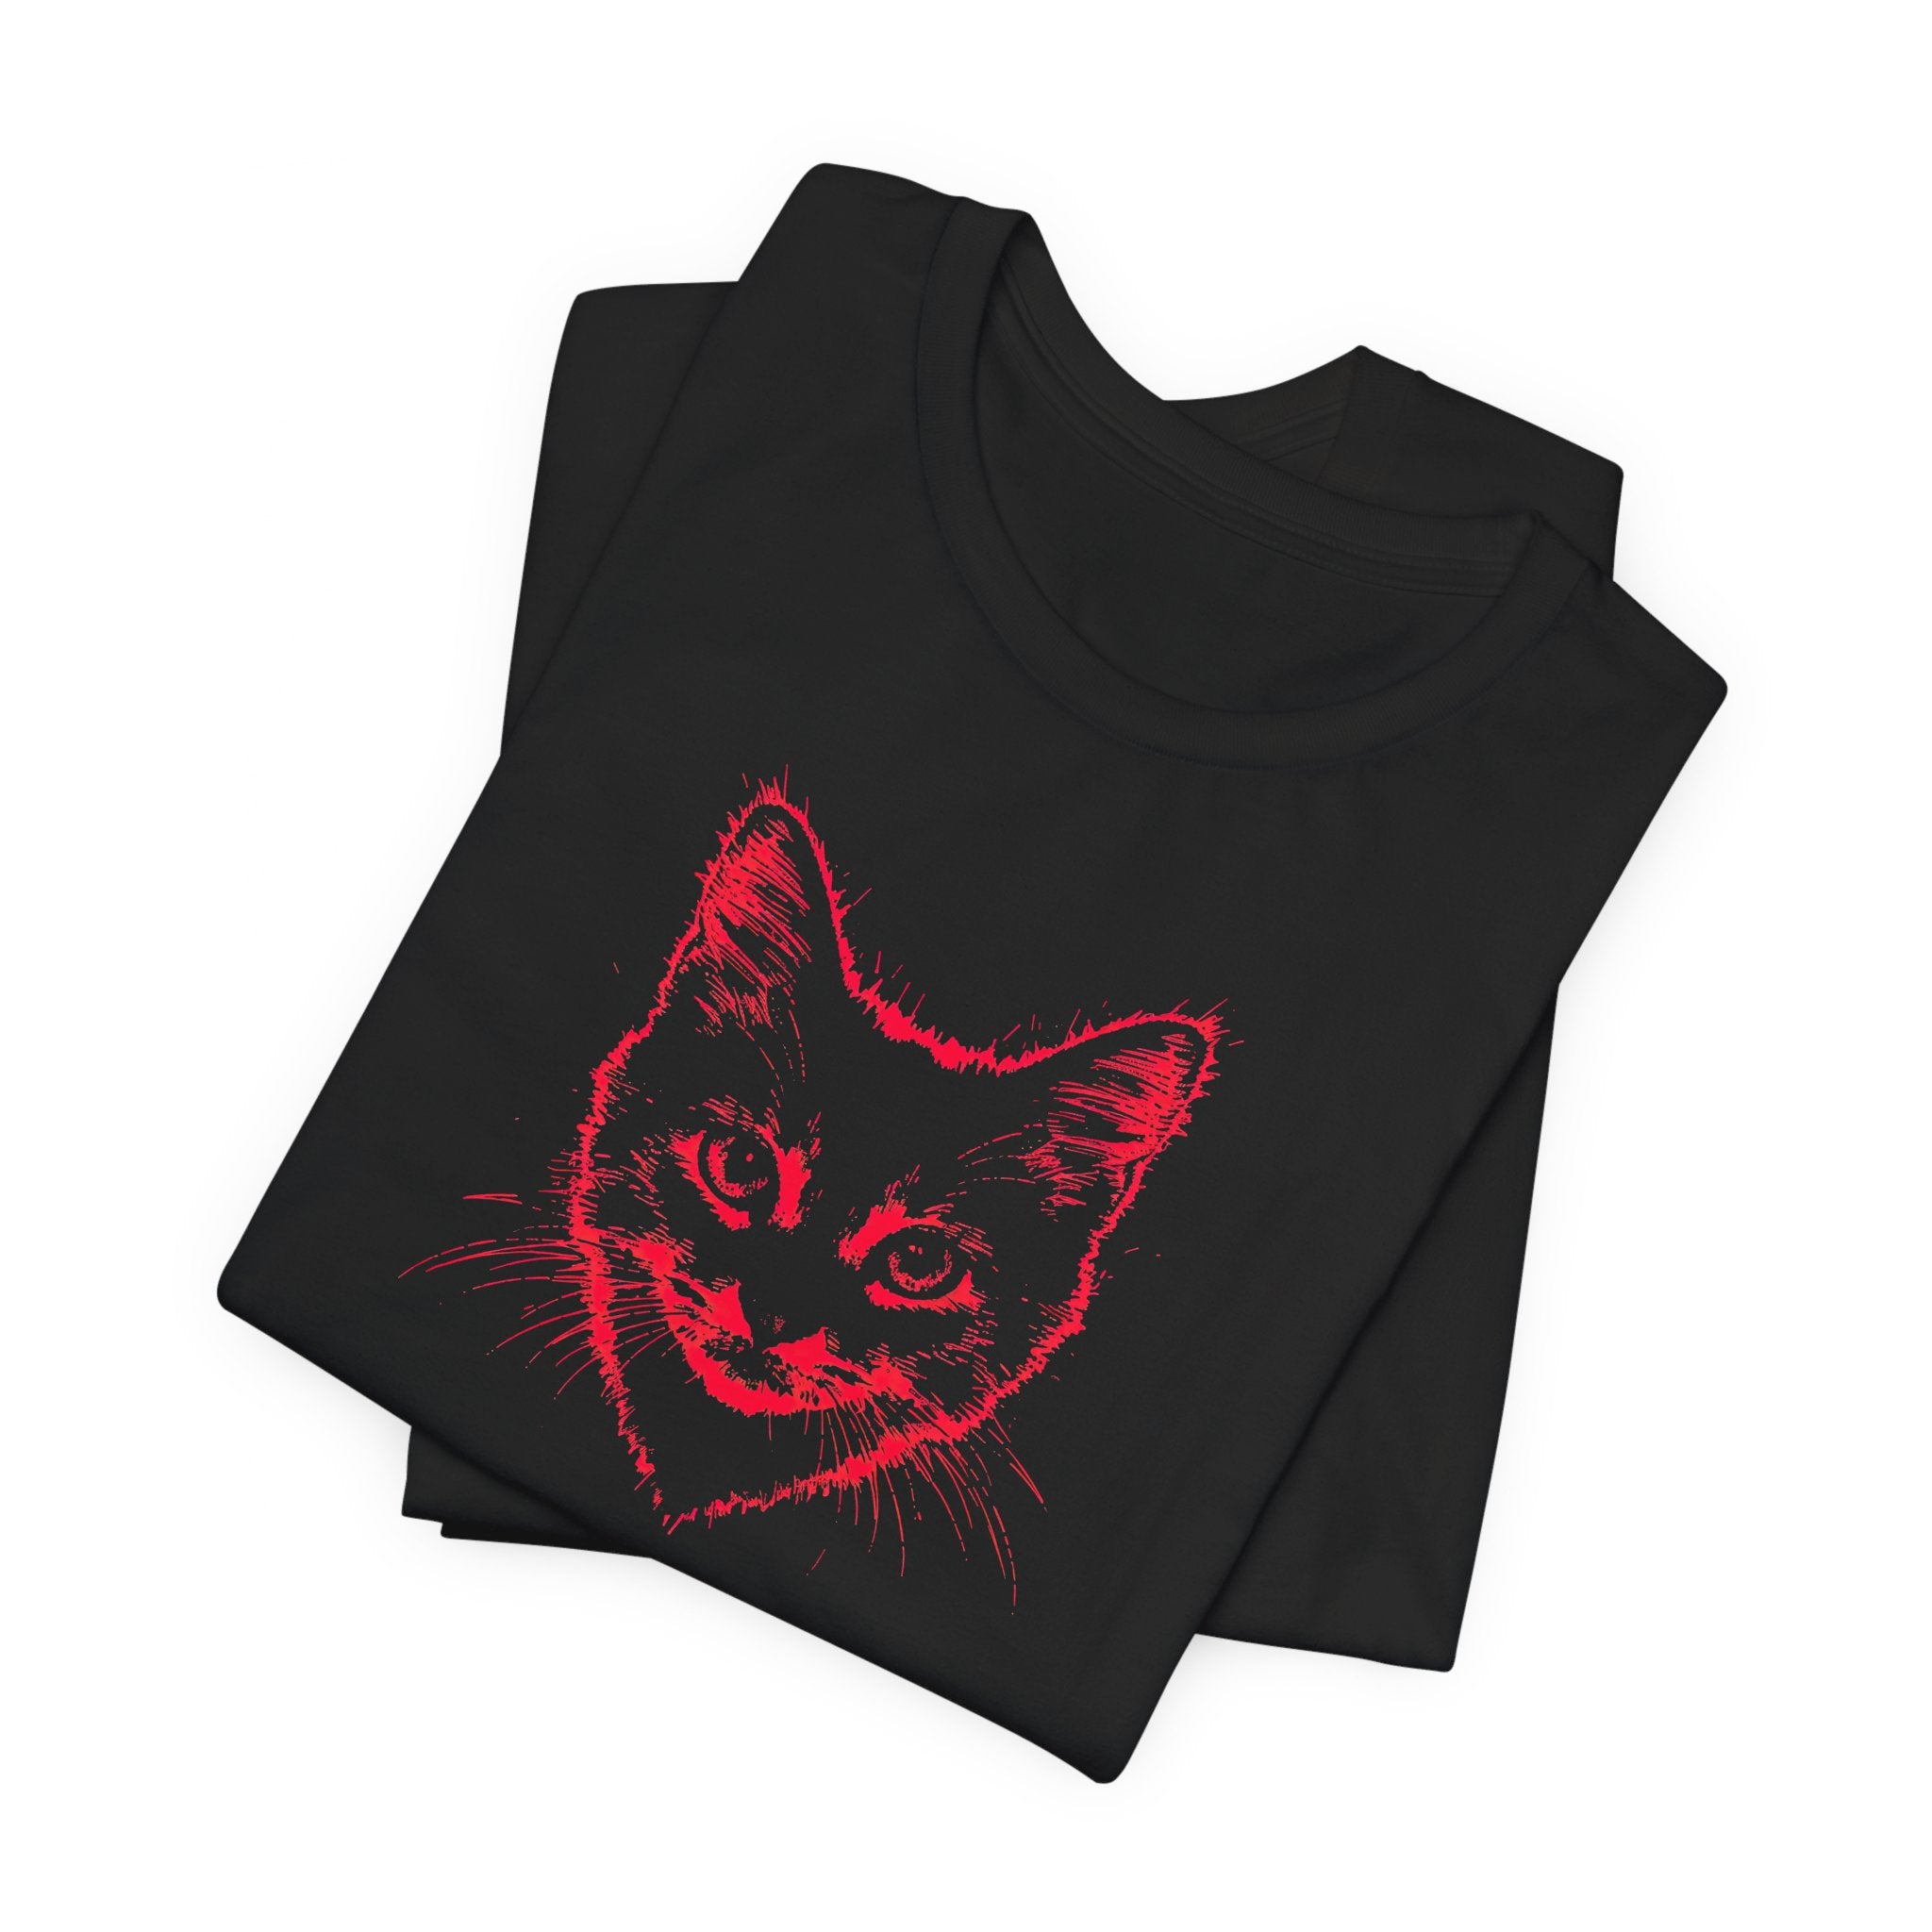 Cat Head Heart T-Shirt